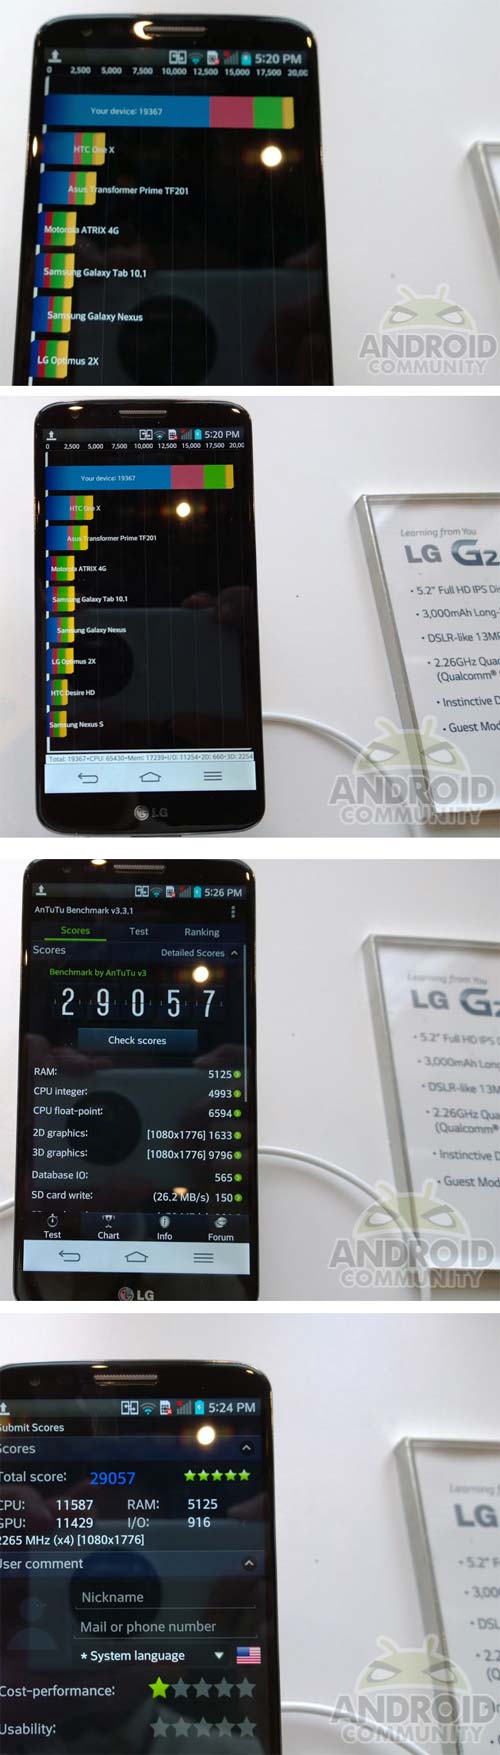 Достижения смартфона LG G2 в AnTuTu